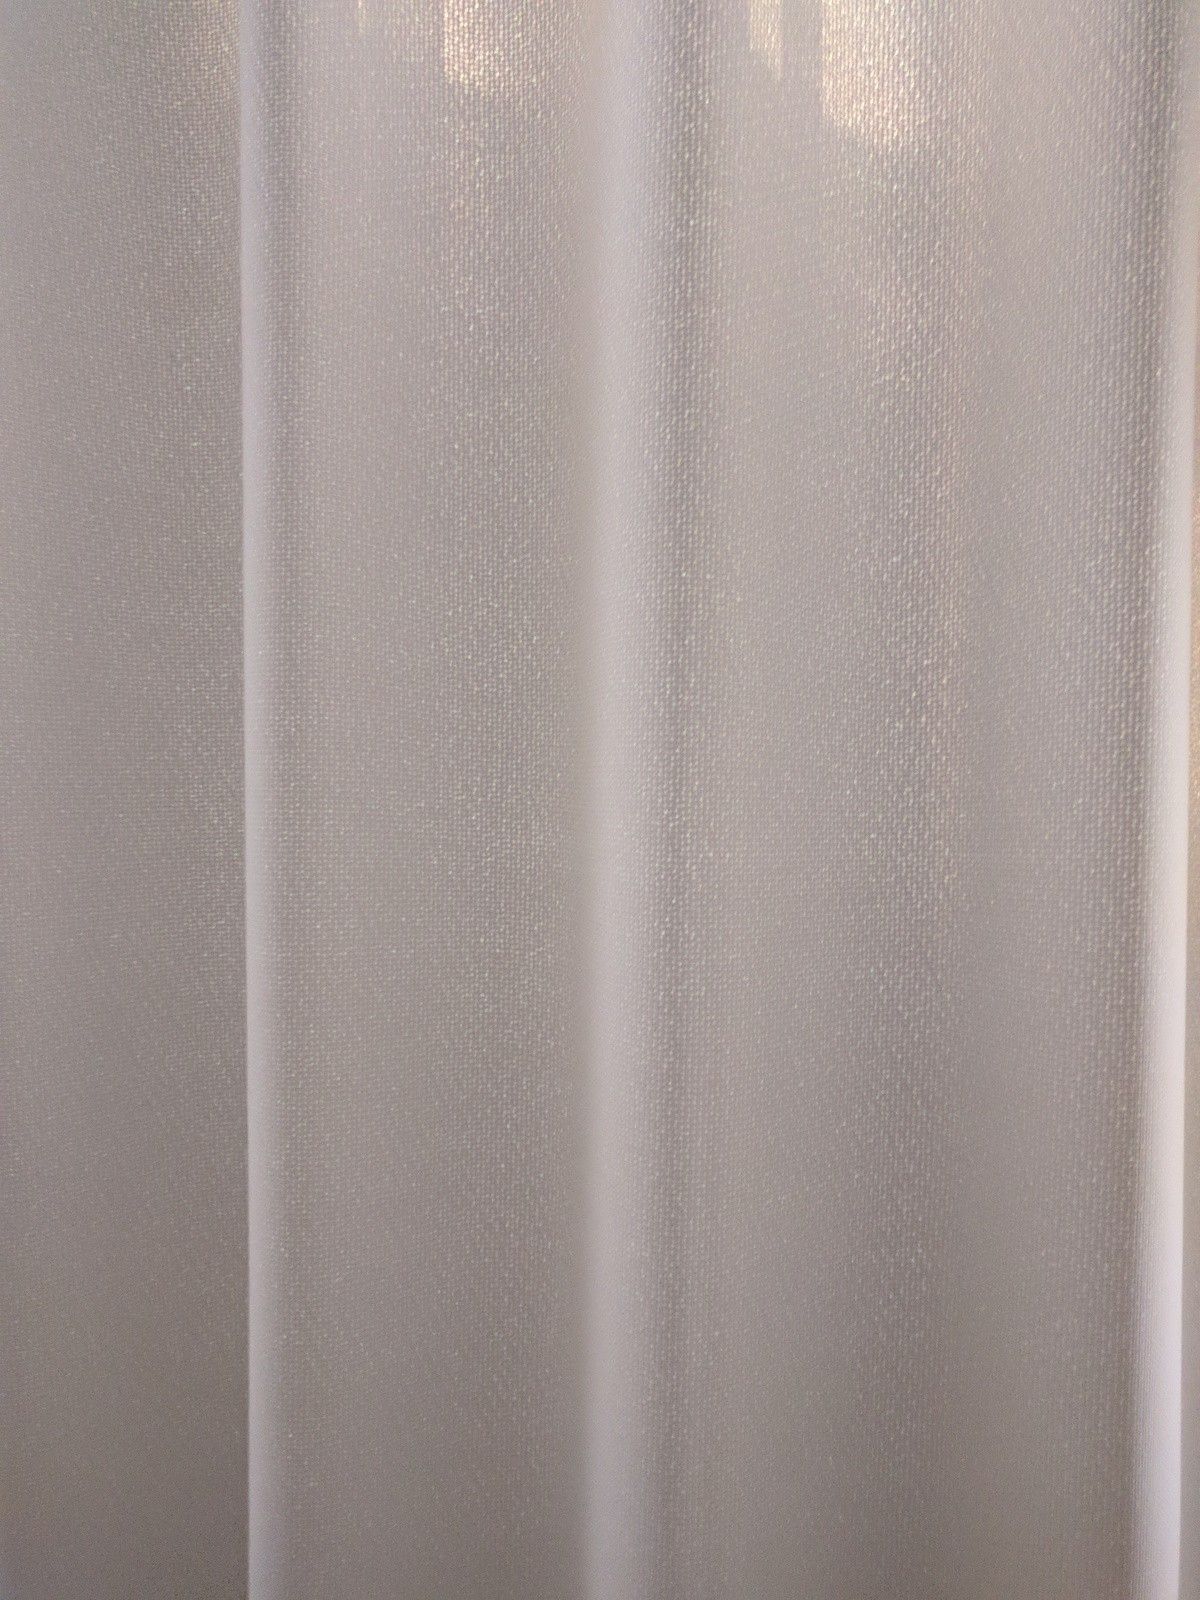 完全遮光カーテンと1級遮光カーテン。白い遮光カーテン。 | 『北欧雑貨の似合うお部屋』が目標の雑記ブログ - 楽天ブログ